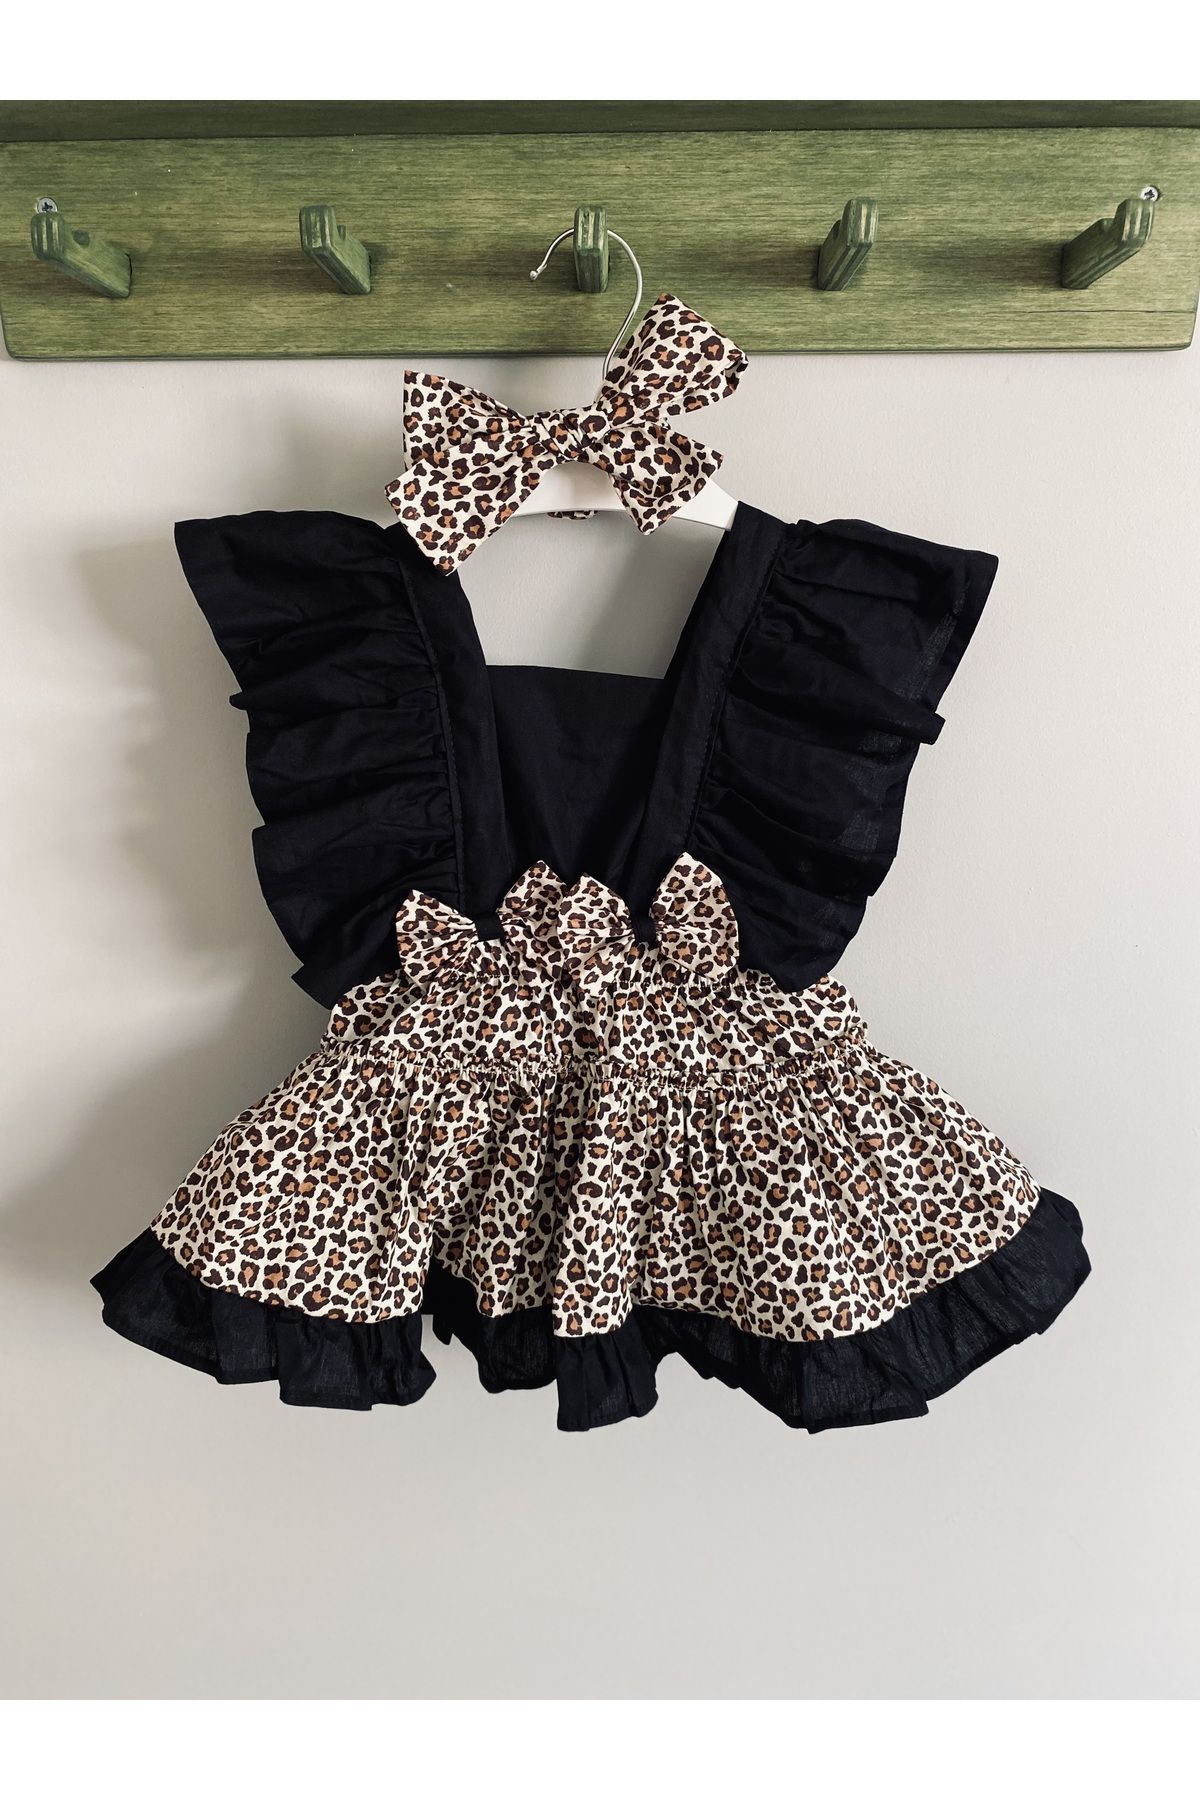 Mini Kids Baby Kız Bebek Leopar Desenli Elbise Salopet Bandana Set